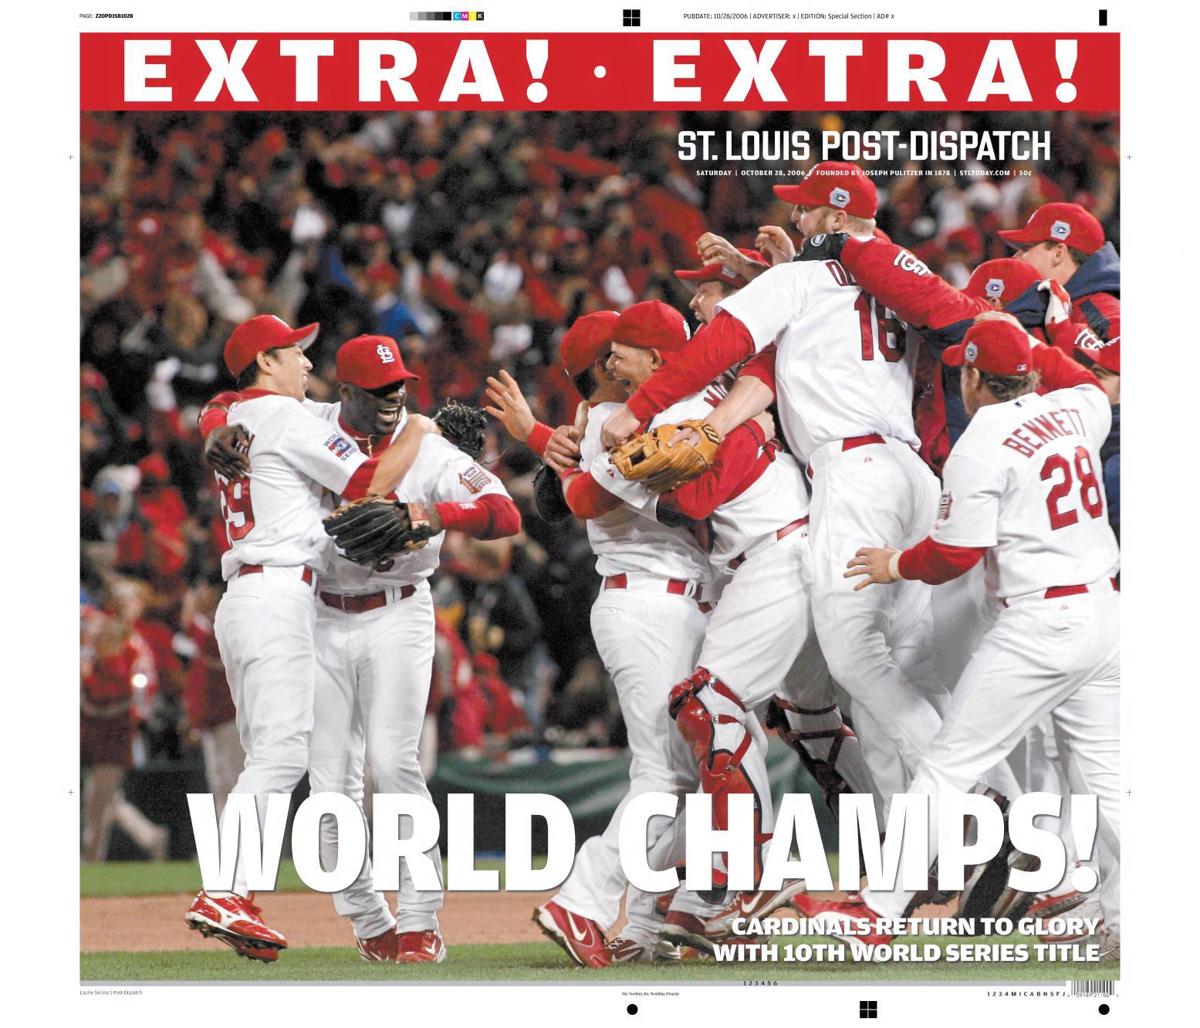 Oct. 28, 2006: Cardinals win World Series